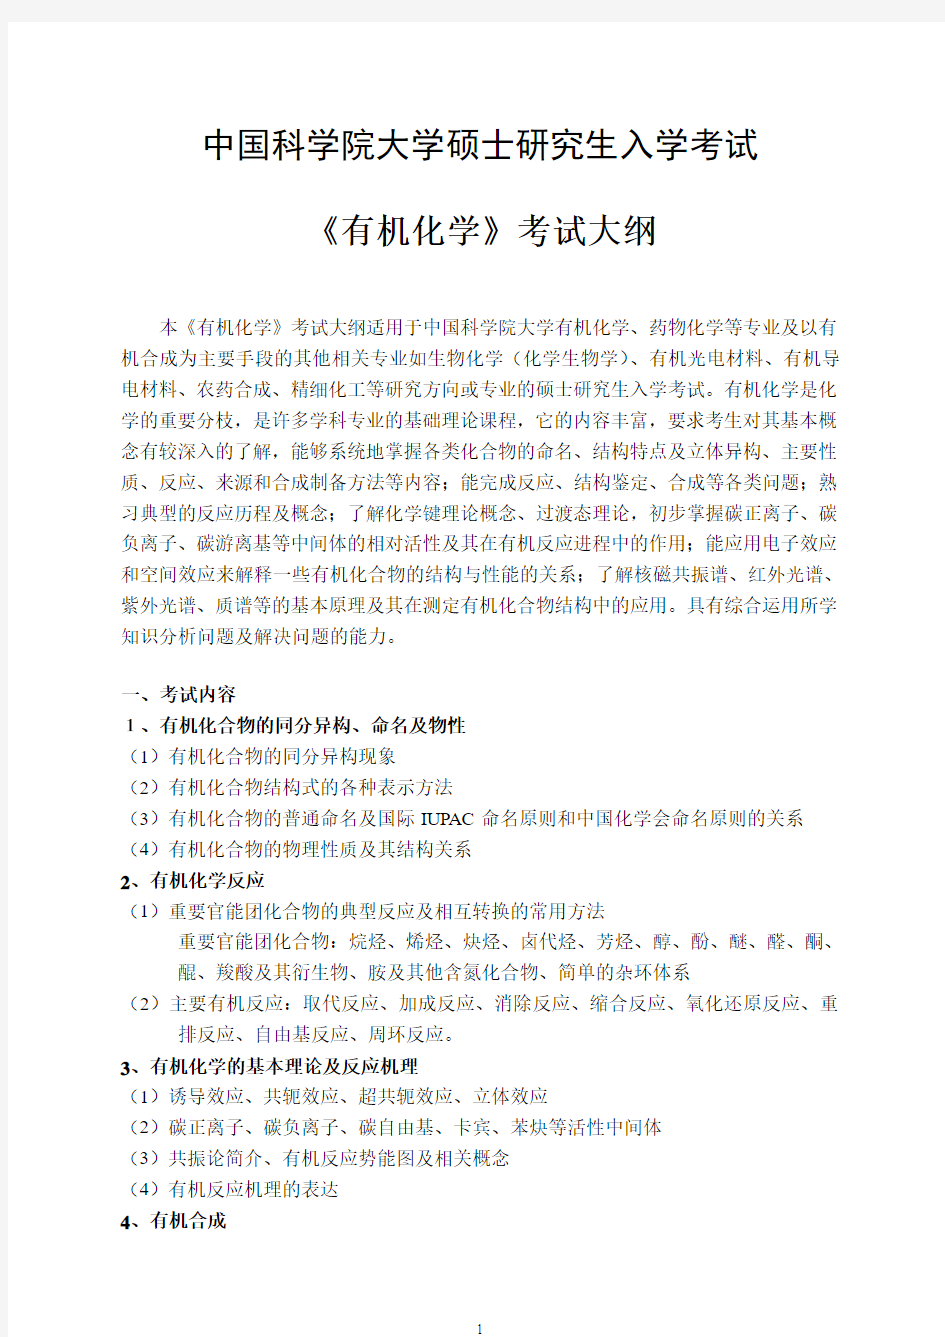 中国科学院大学-2019年-硕士研究生入学考试大纲-820有机化学